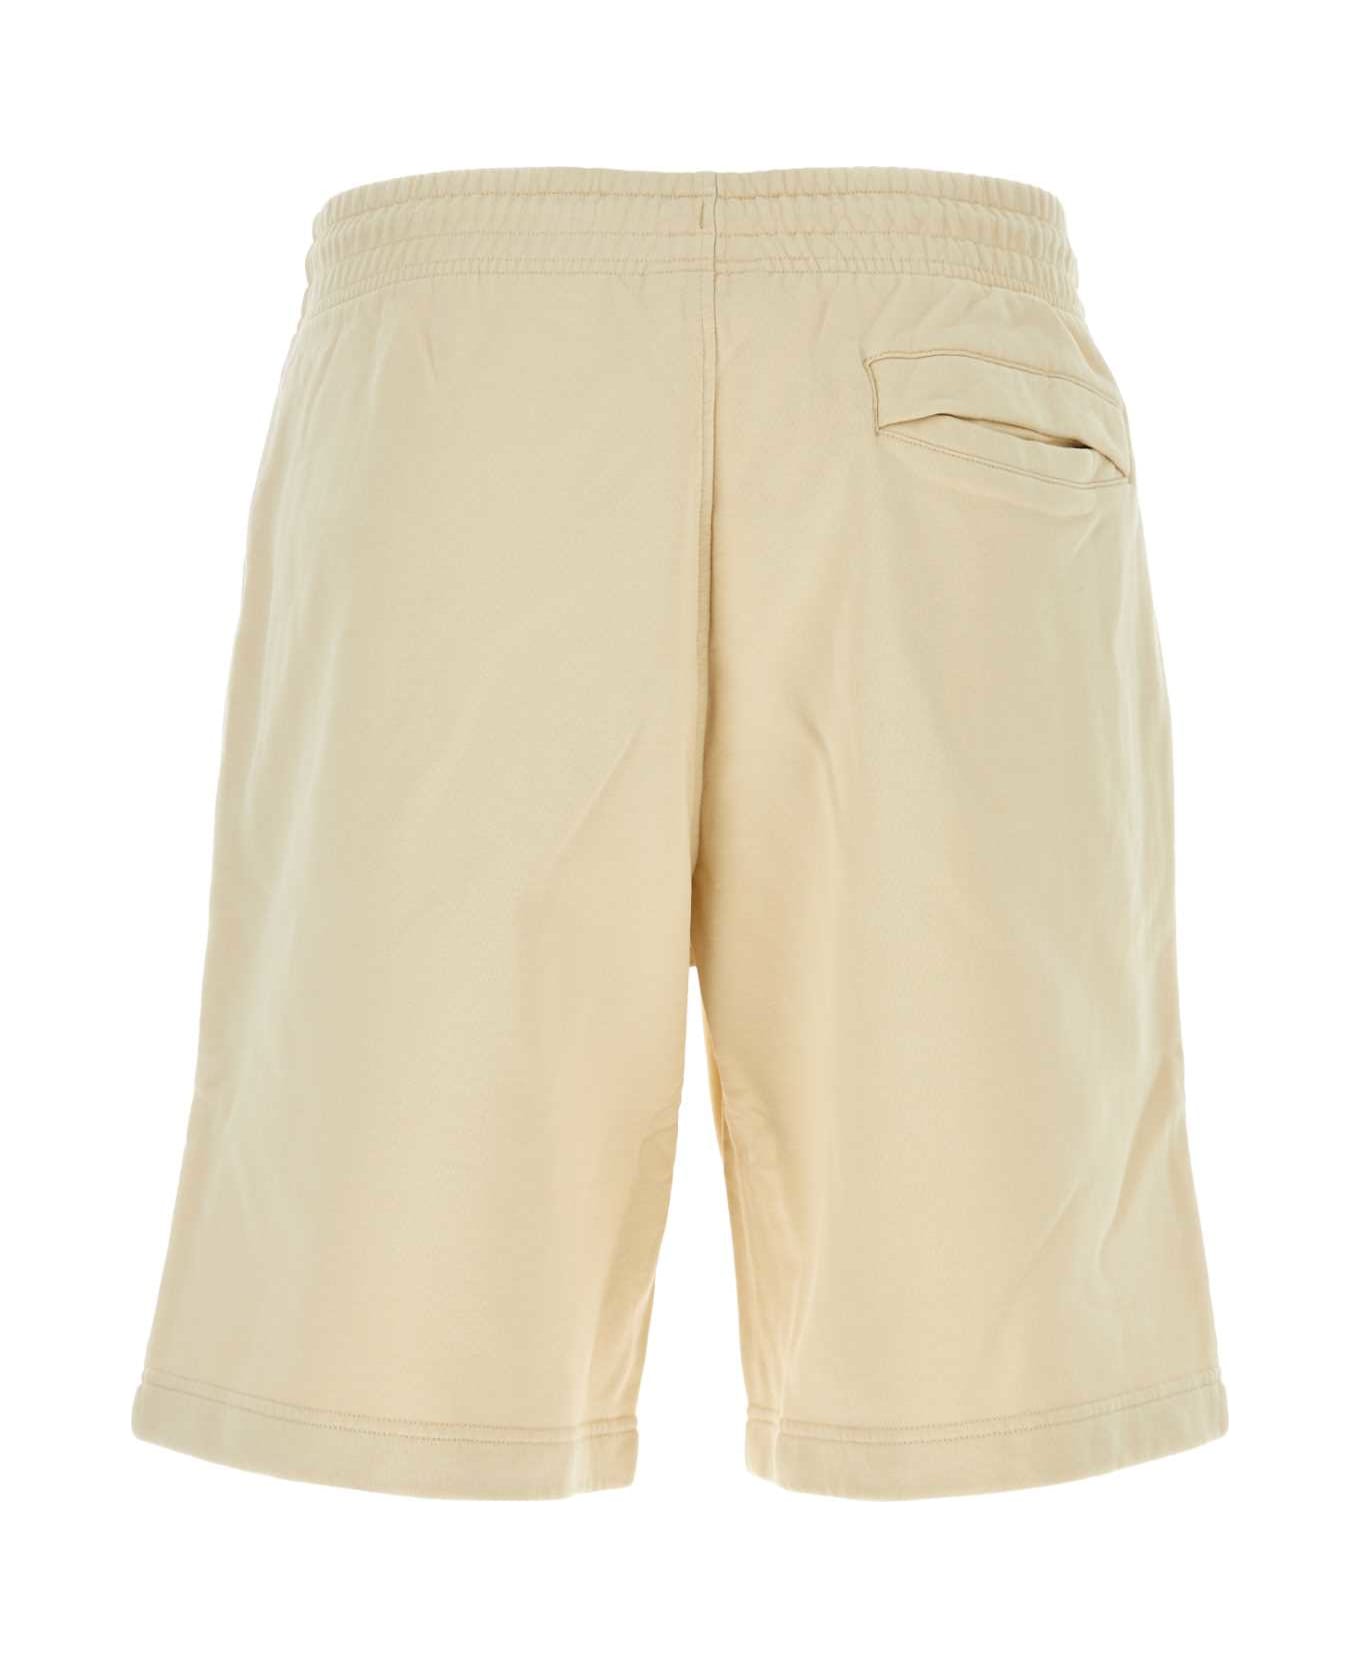 Maison Kitsuné Sand Cotton Bermuda Shorts - PAPER ショートパンツ